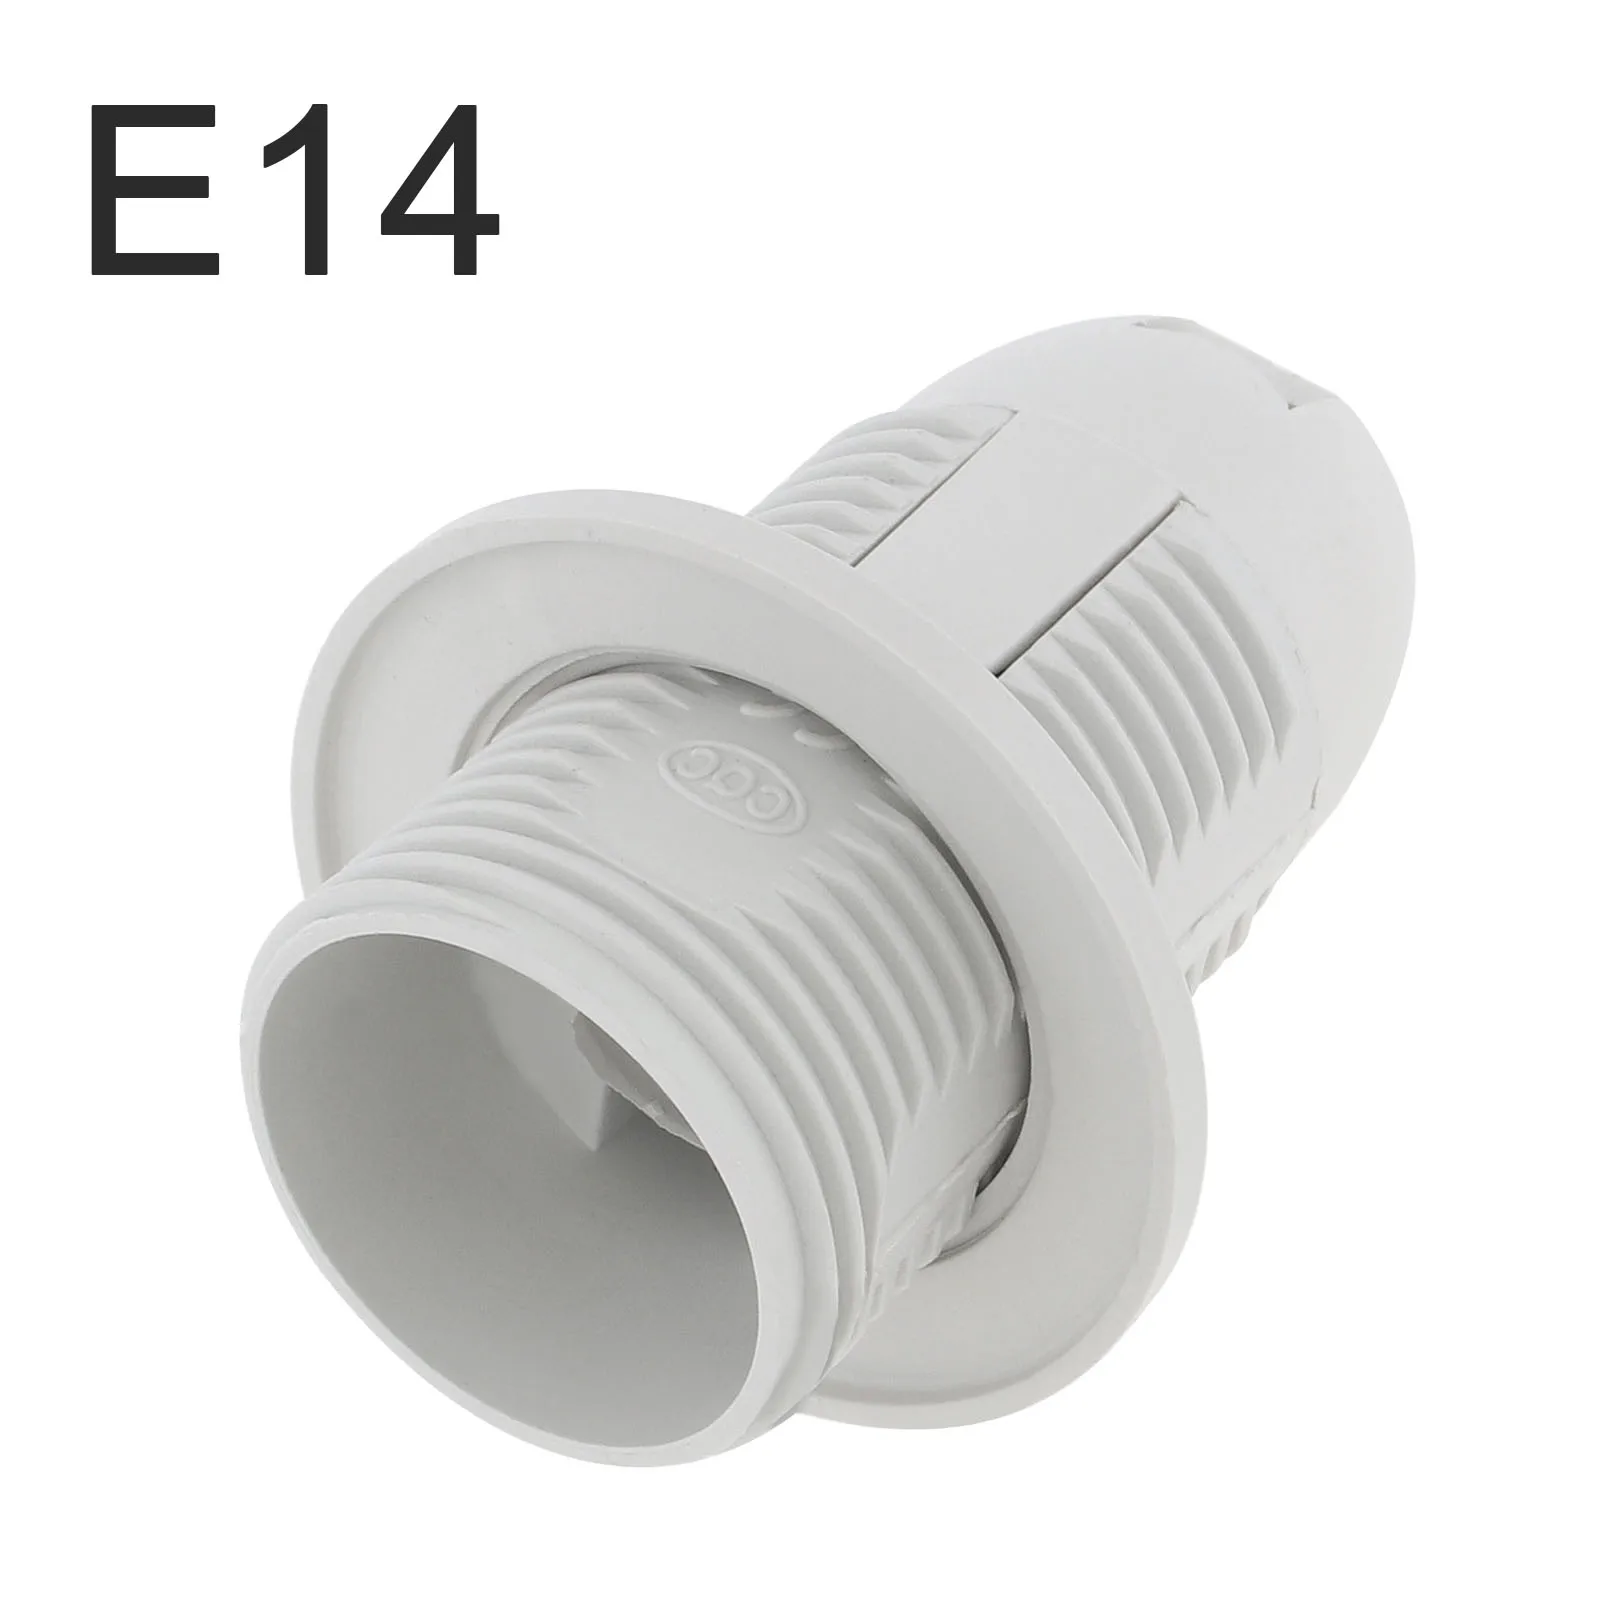 E14 Lamp Holder Edison Screw Lamp Holder Base Insulating Plastic Shell Light Bulb Socket